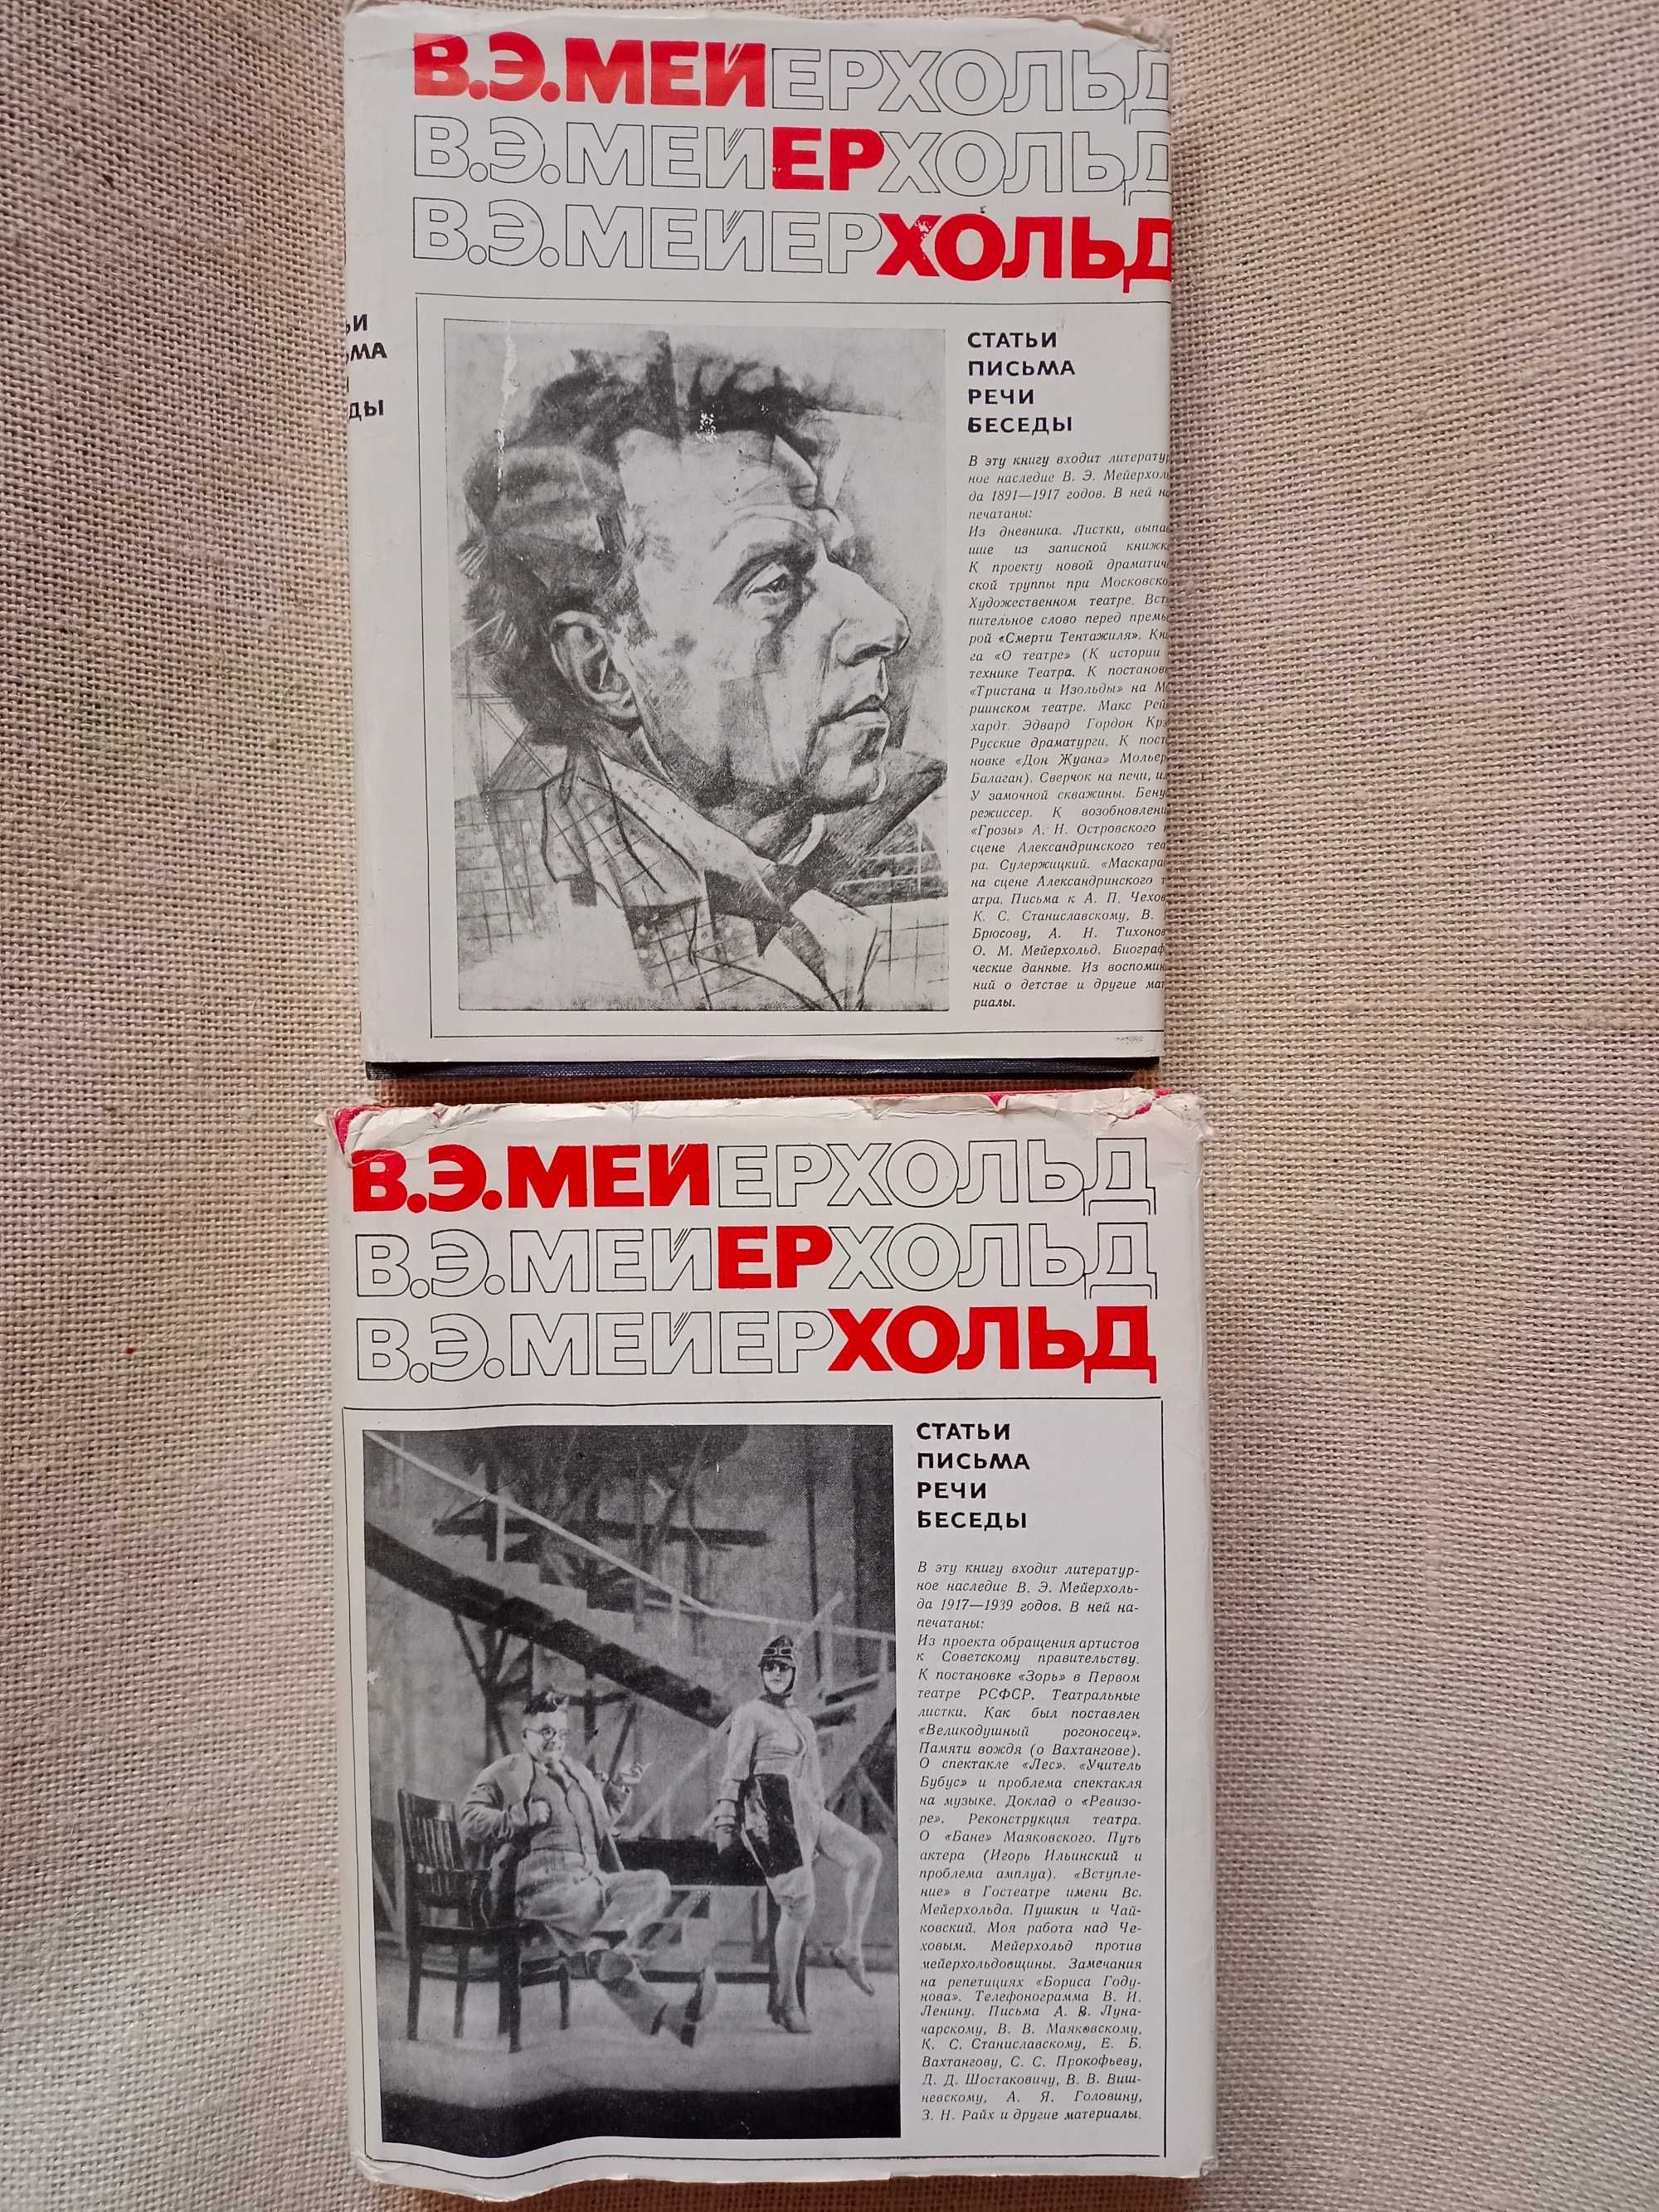 МЕЙЕРХОЛЬД -2 тома статьи, письма, речи беседы 1968 -театр,театральный